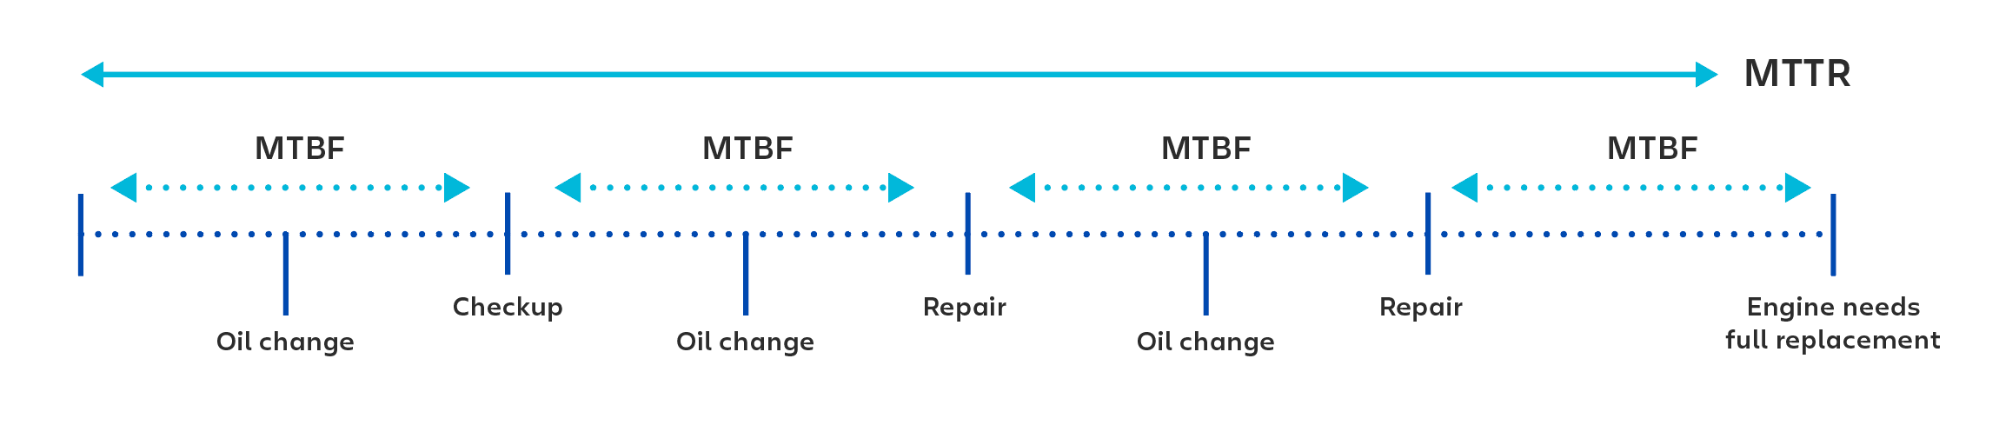 Exemple visuel d'utilisation du temps moyen entre pannes (MTBF) lors du calcul du temps entre chaque vérification ou réparation.